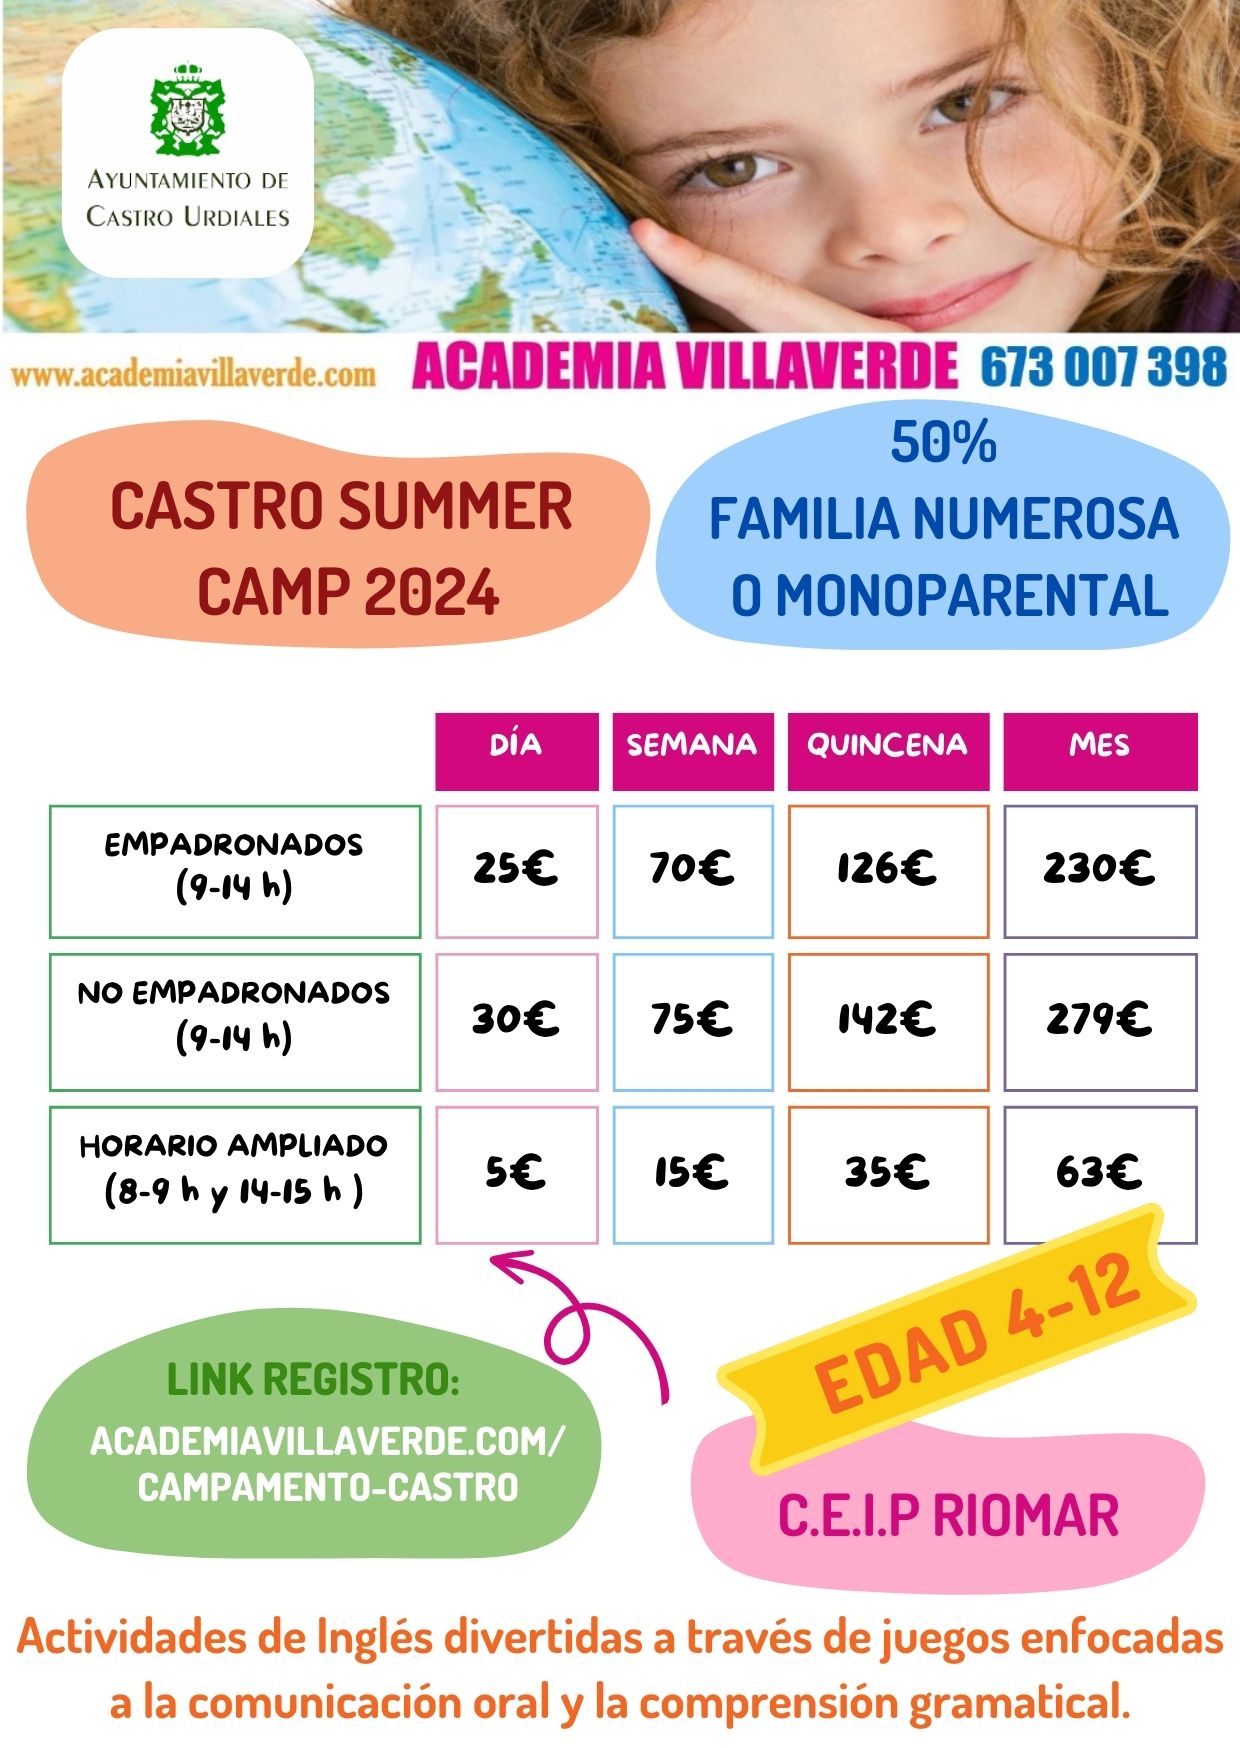 SUMMER CAMP CASTRO URDIALES 2024